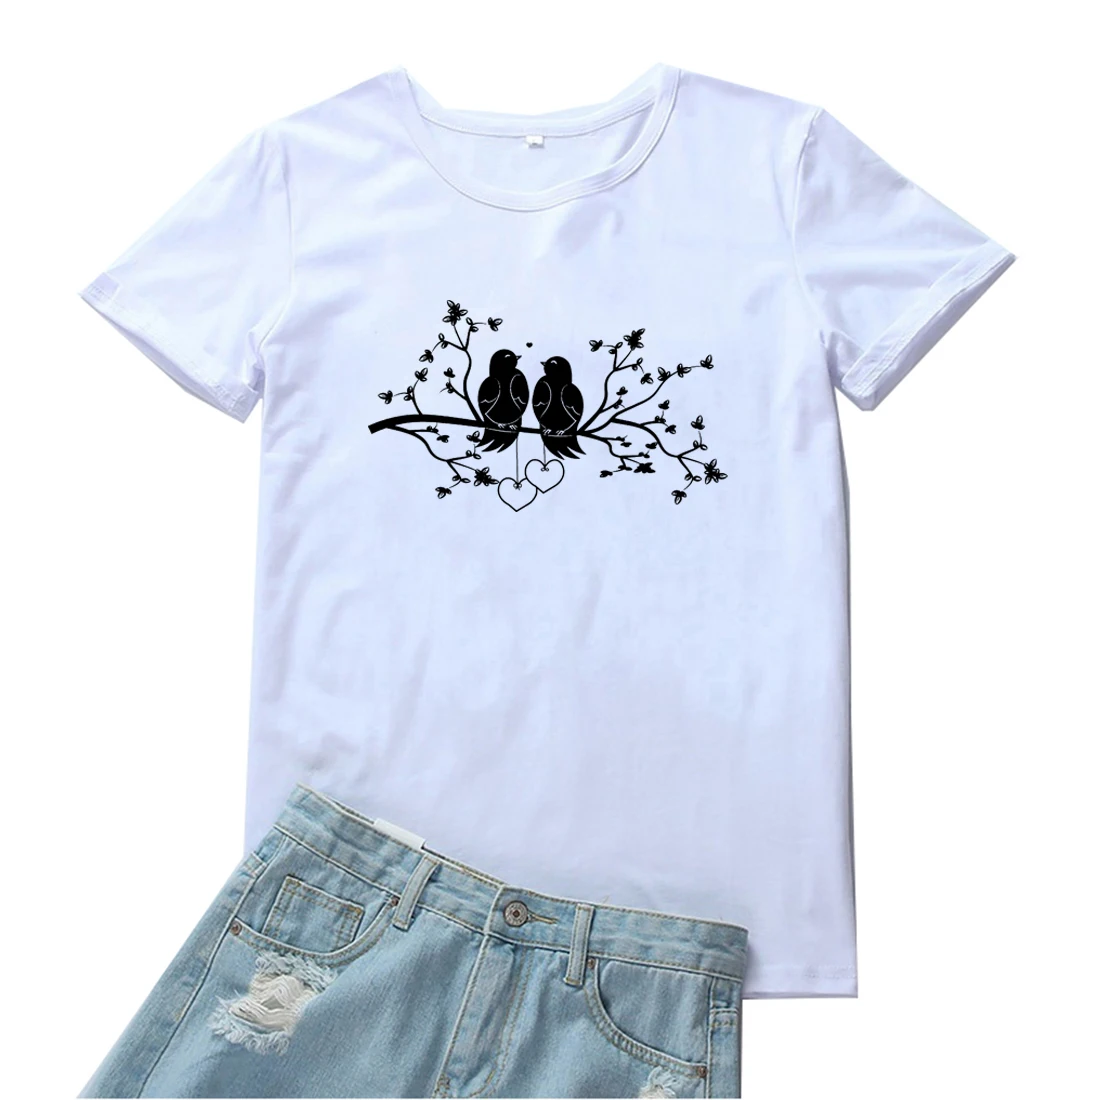 

Женская футболка птички на ветке, женская модная простая футболка с милым рисунком животных, свободная женская футболка с графическим рису...